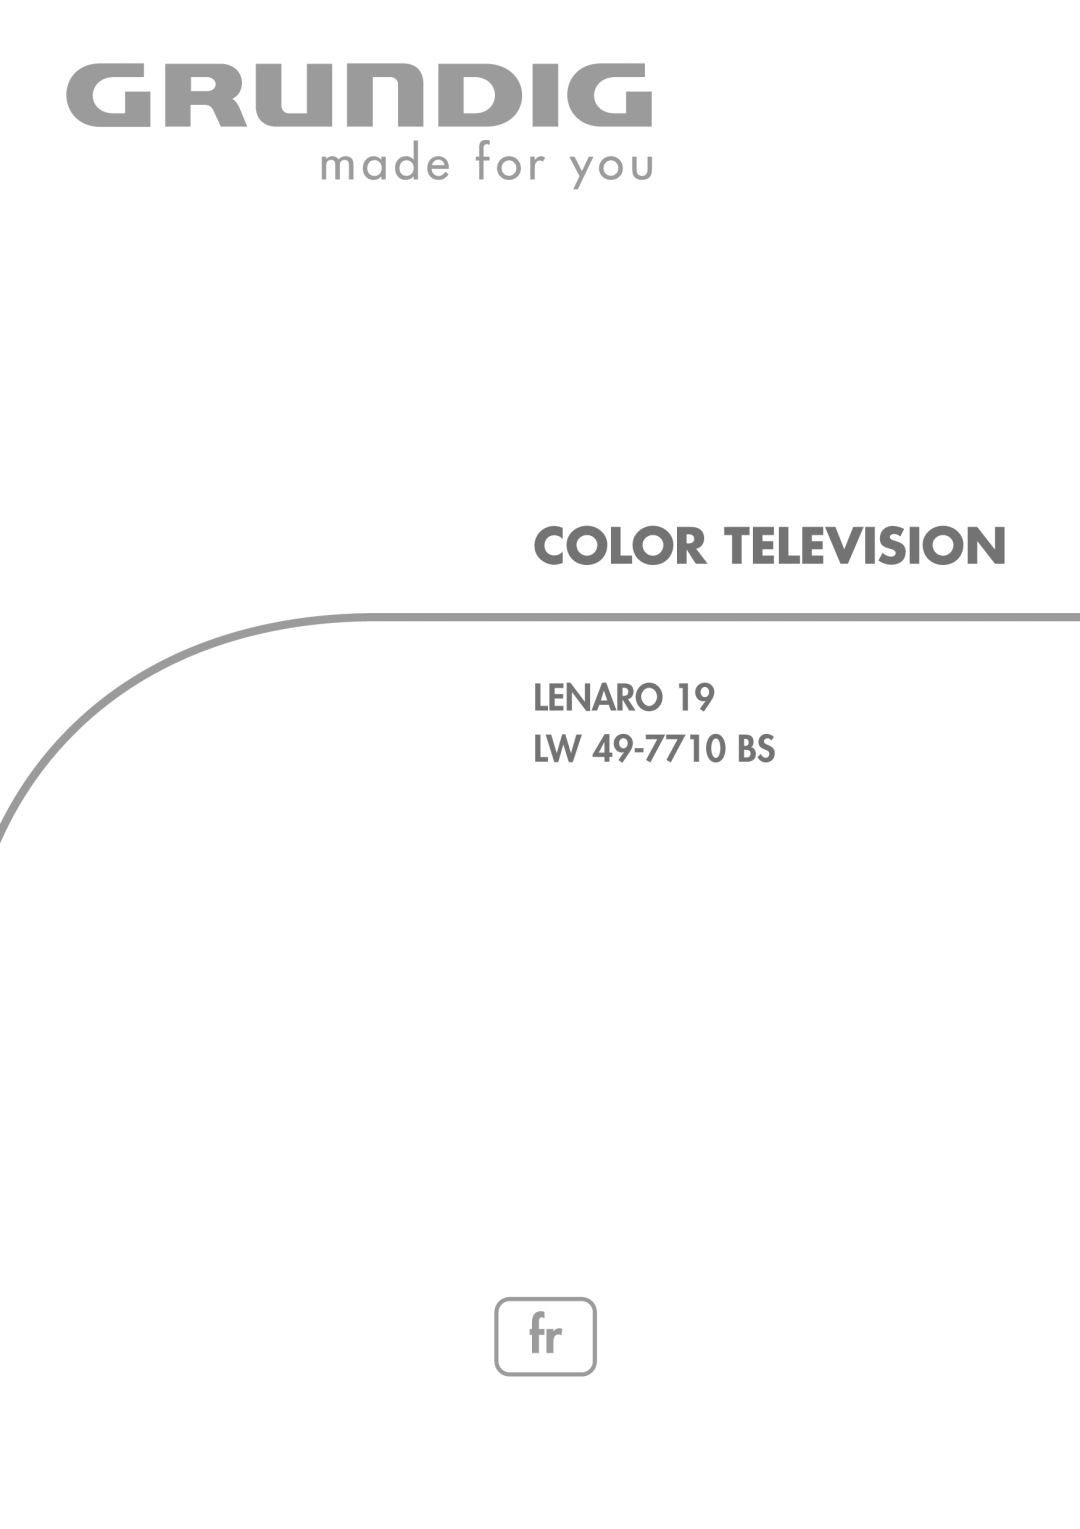 Grundig LW49-7710BS manual Color Television, LENARO LW 49-7710 BS 